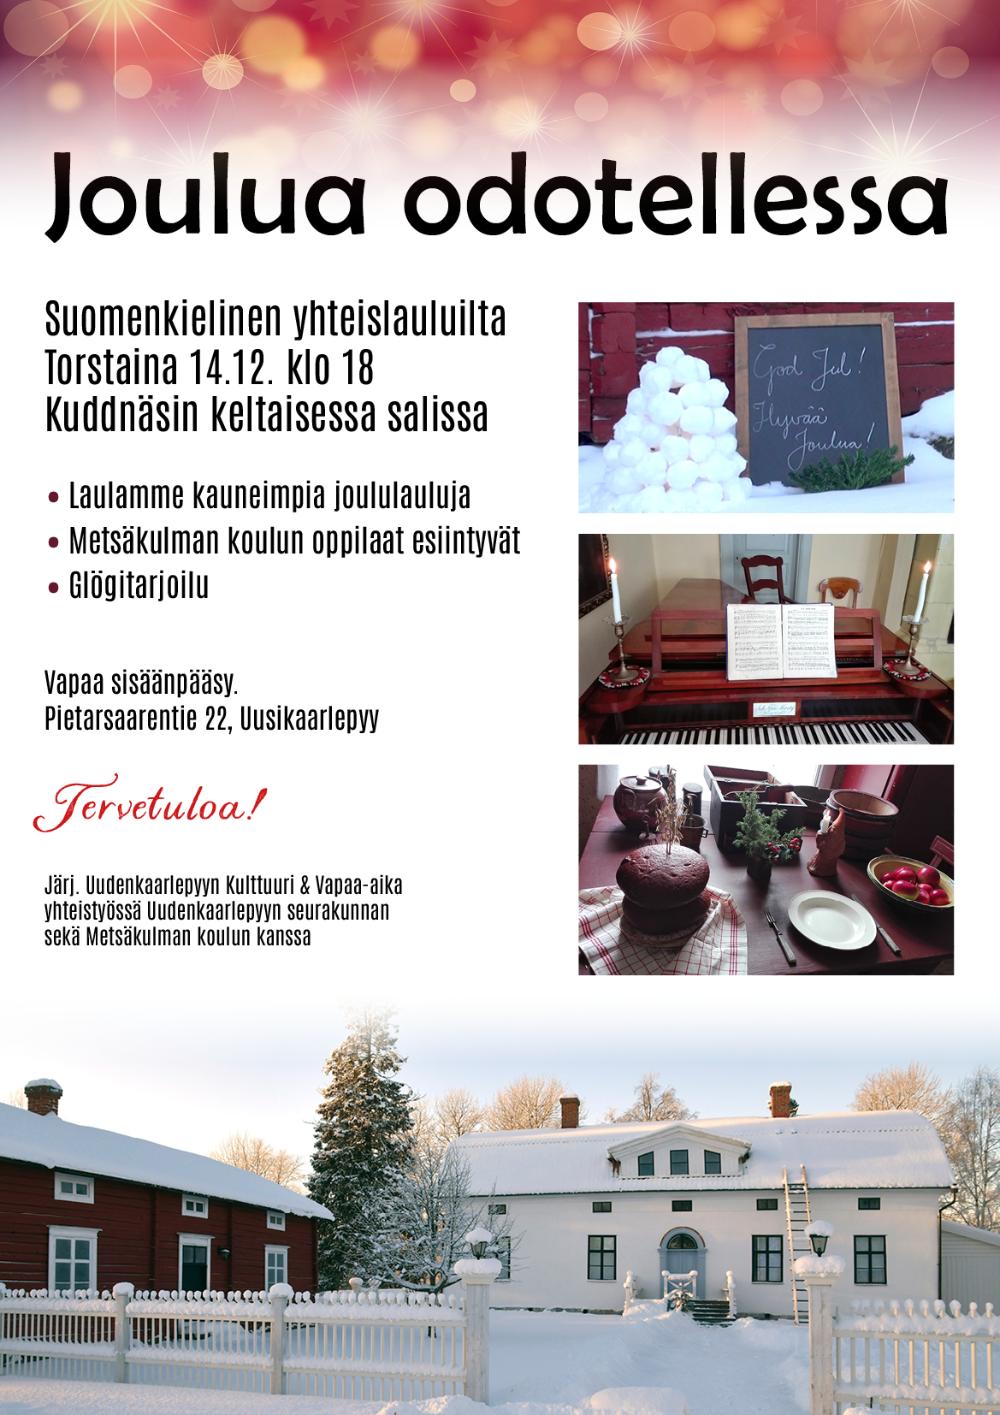 Joulua odotellessa yhteislauluilta Kuddnäsissa esite 2023